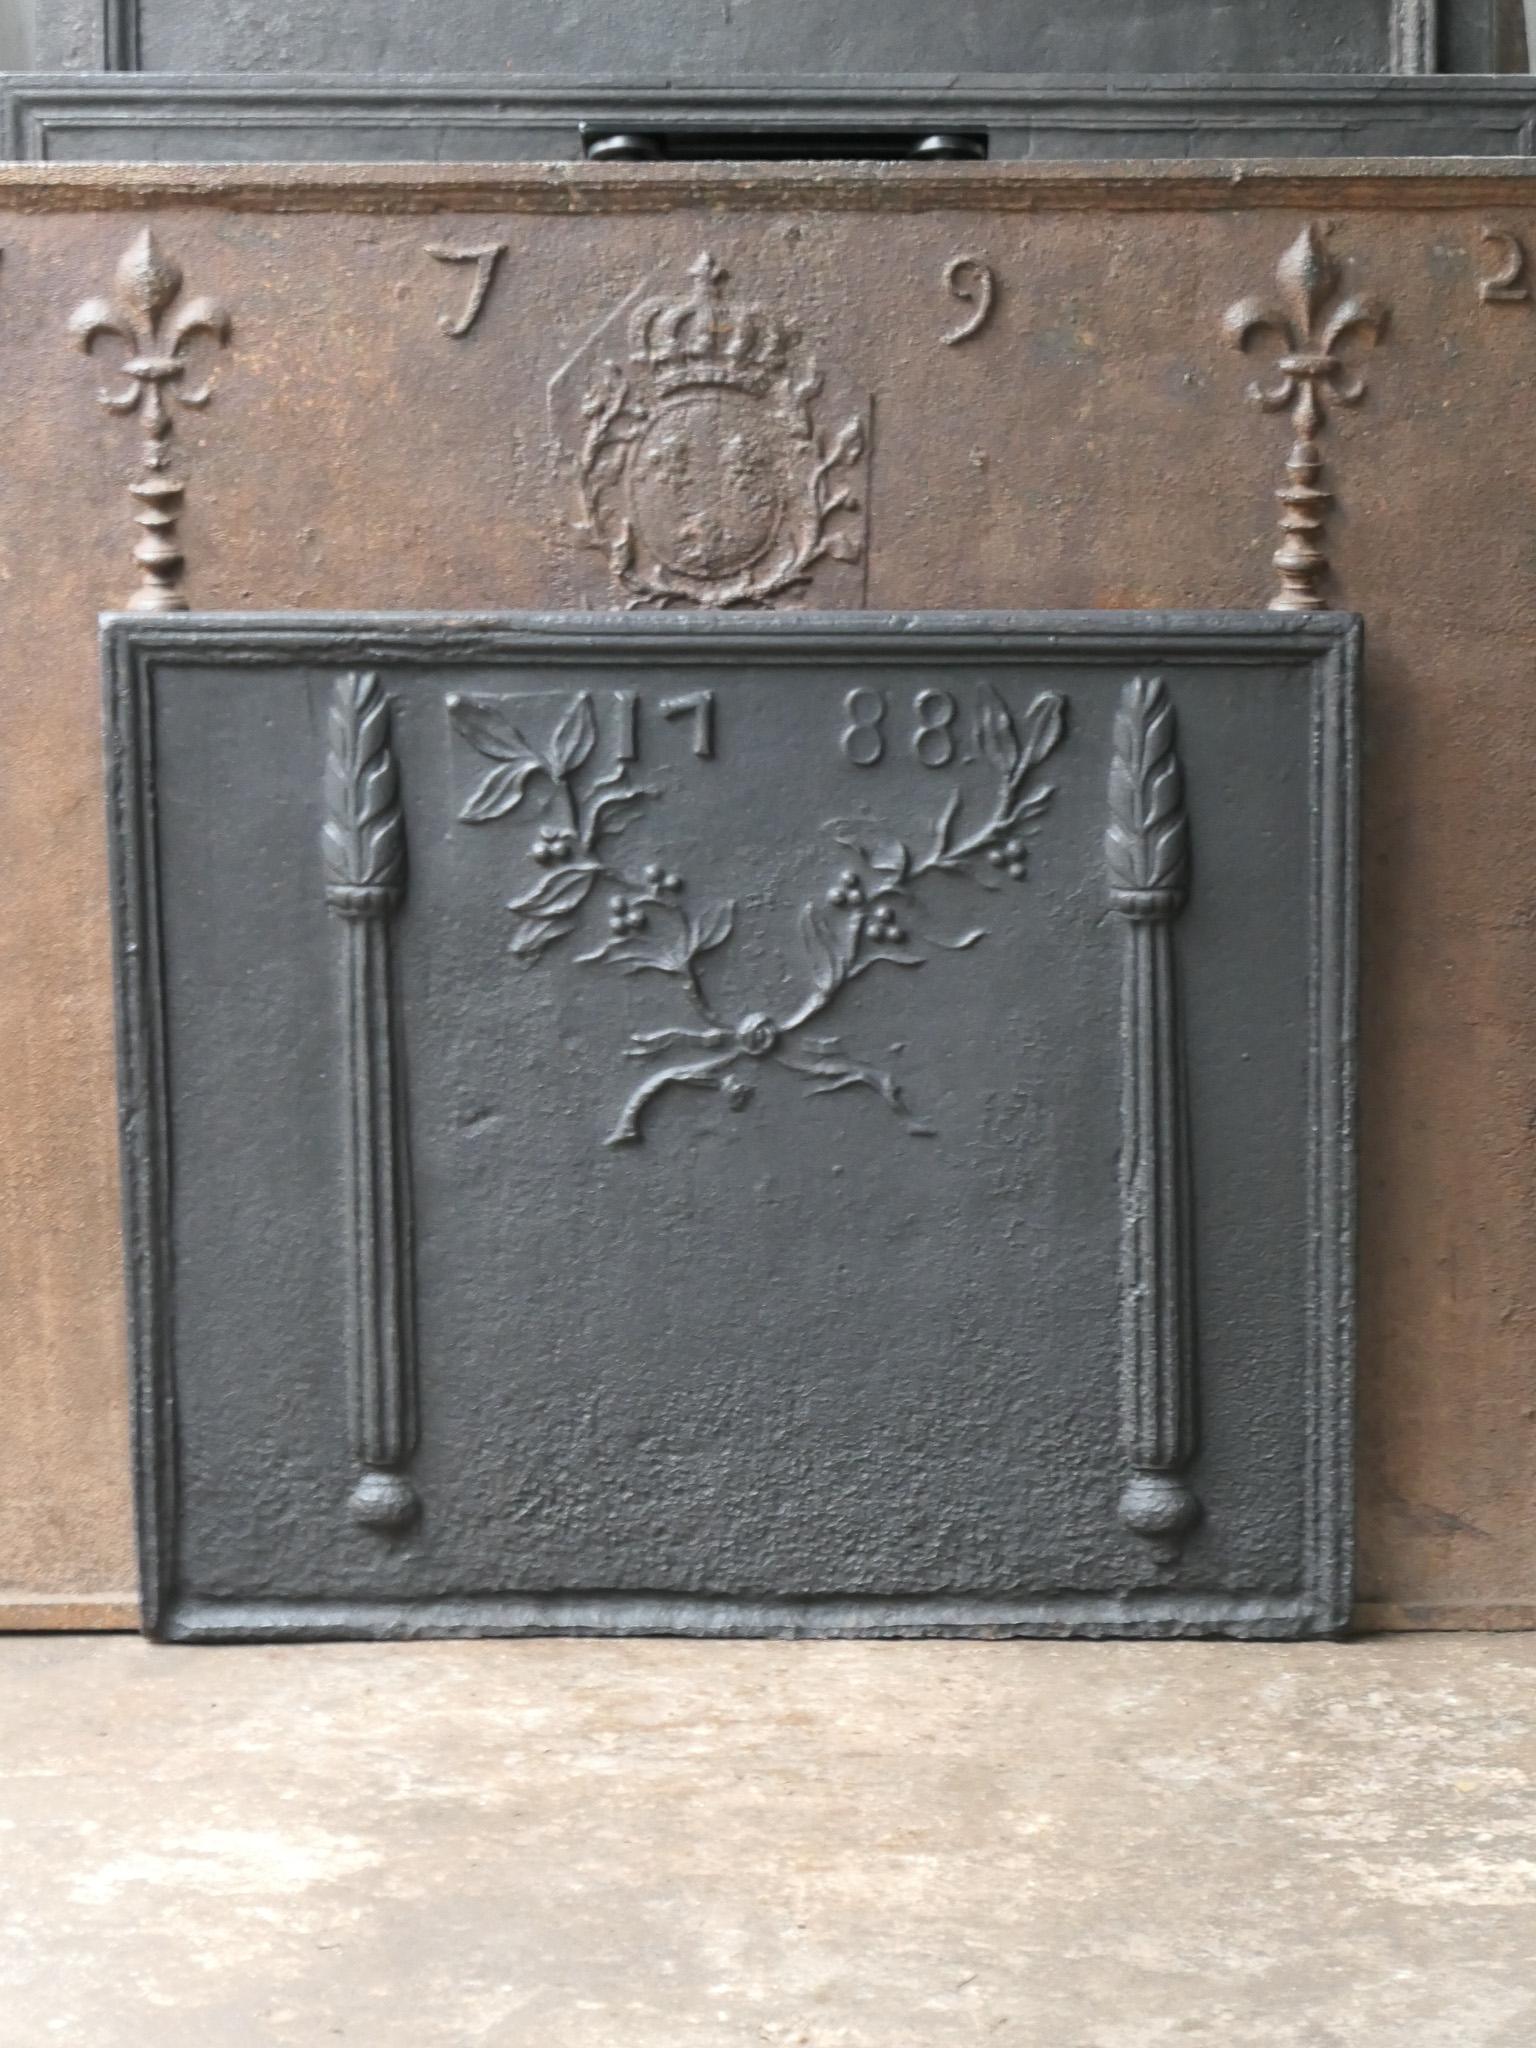 Plaque de cheminée française d'époque Louis XV avec deux piliers, des branches d'olivier (symbolisant la paix) et la date de production 1788.

La plaque de cheminée est en fonte et a une patine noire. Il est en bon état et ne présente pas de